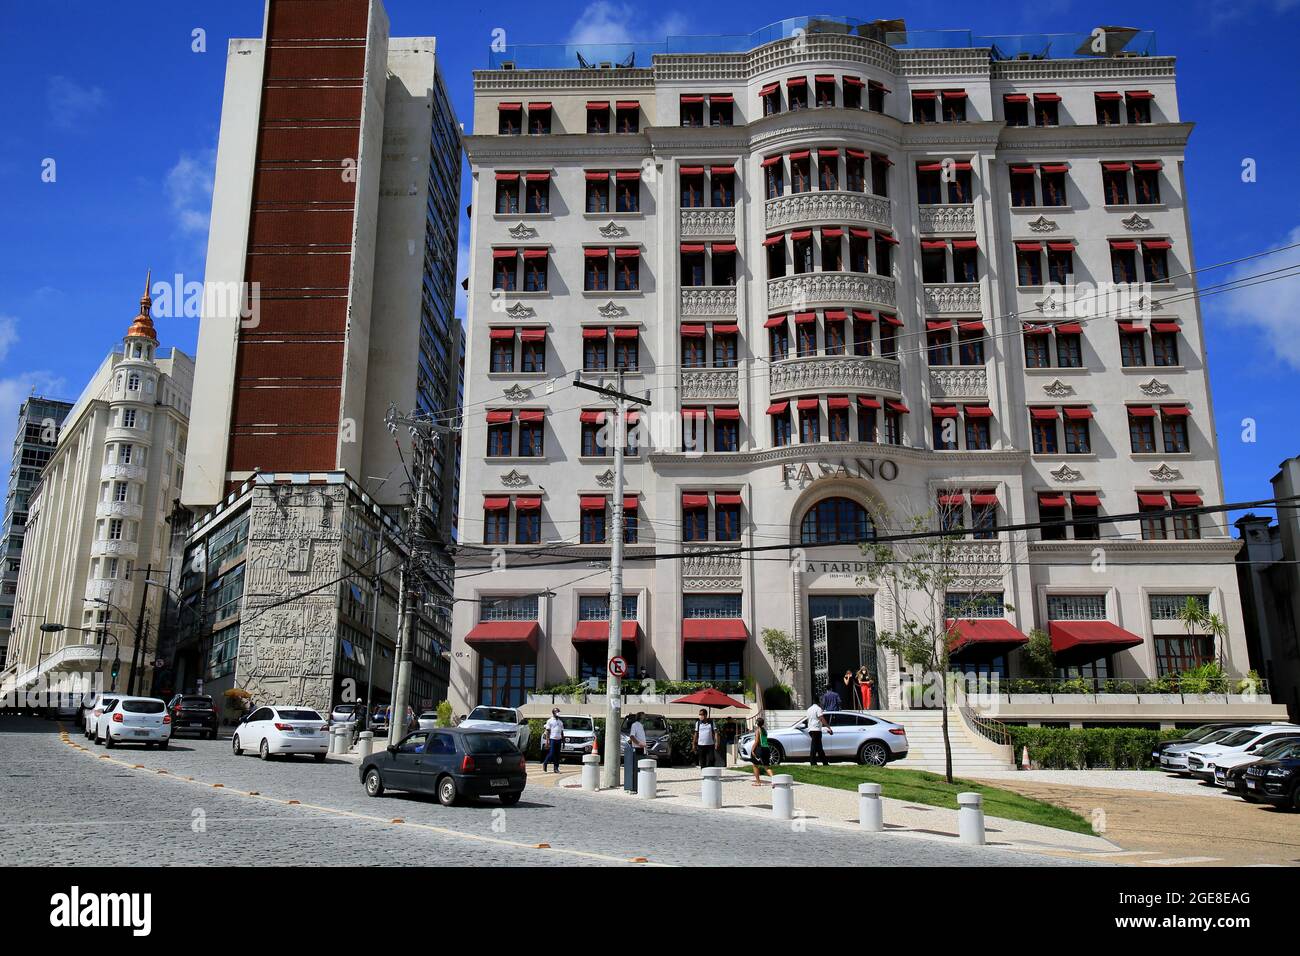 salvador, bahia, brasilien - 17. august 2021: Blick auf das Hotel Fasano auf dem Castro Alves Platz, dem historischen Zentrum der Stadt Salvador. Stockfoto